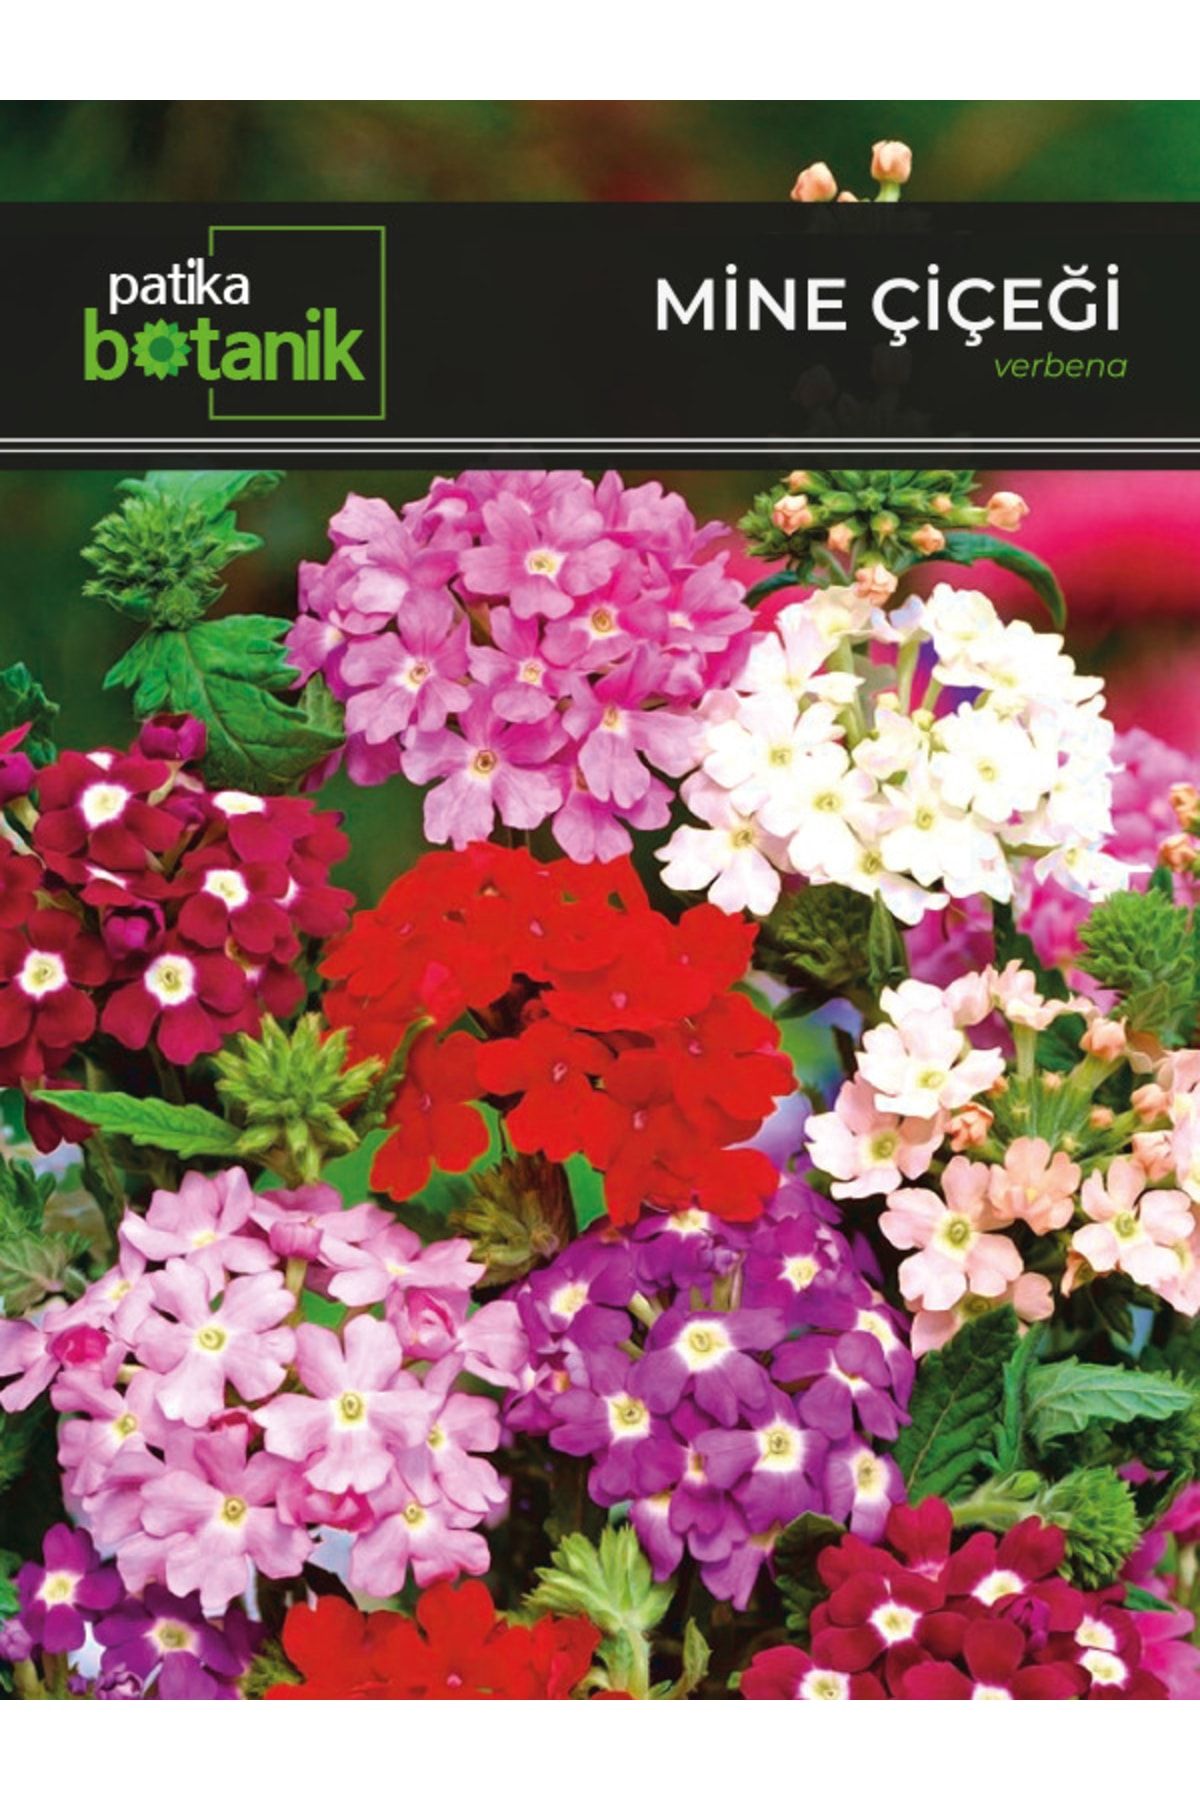 Patika Botanik 50 Adet Mine (VERBENA) Çiçek Tohumu